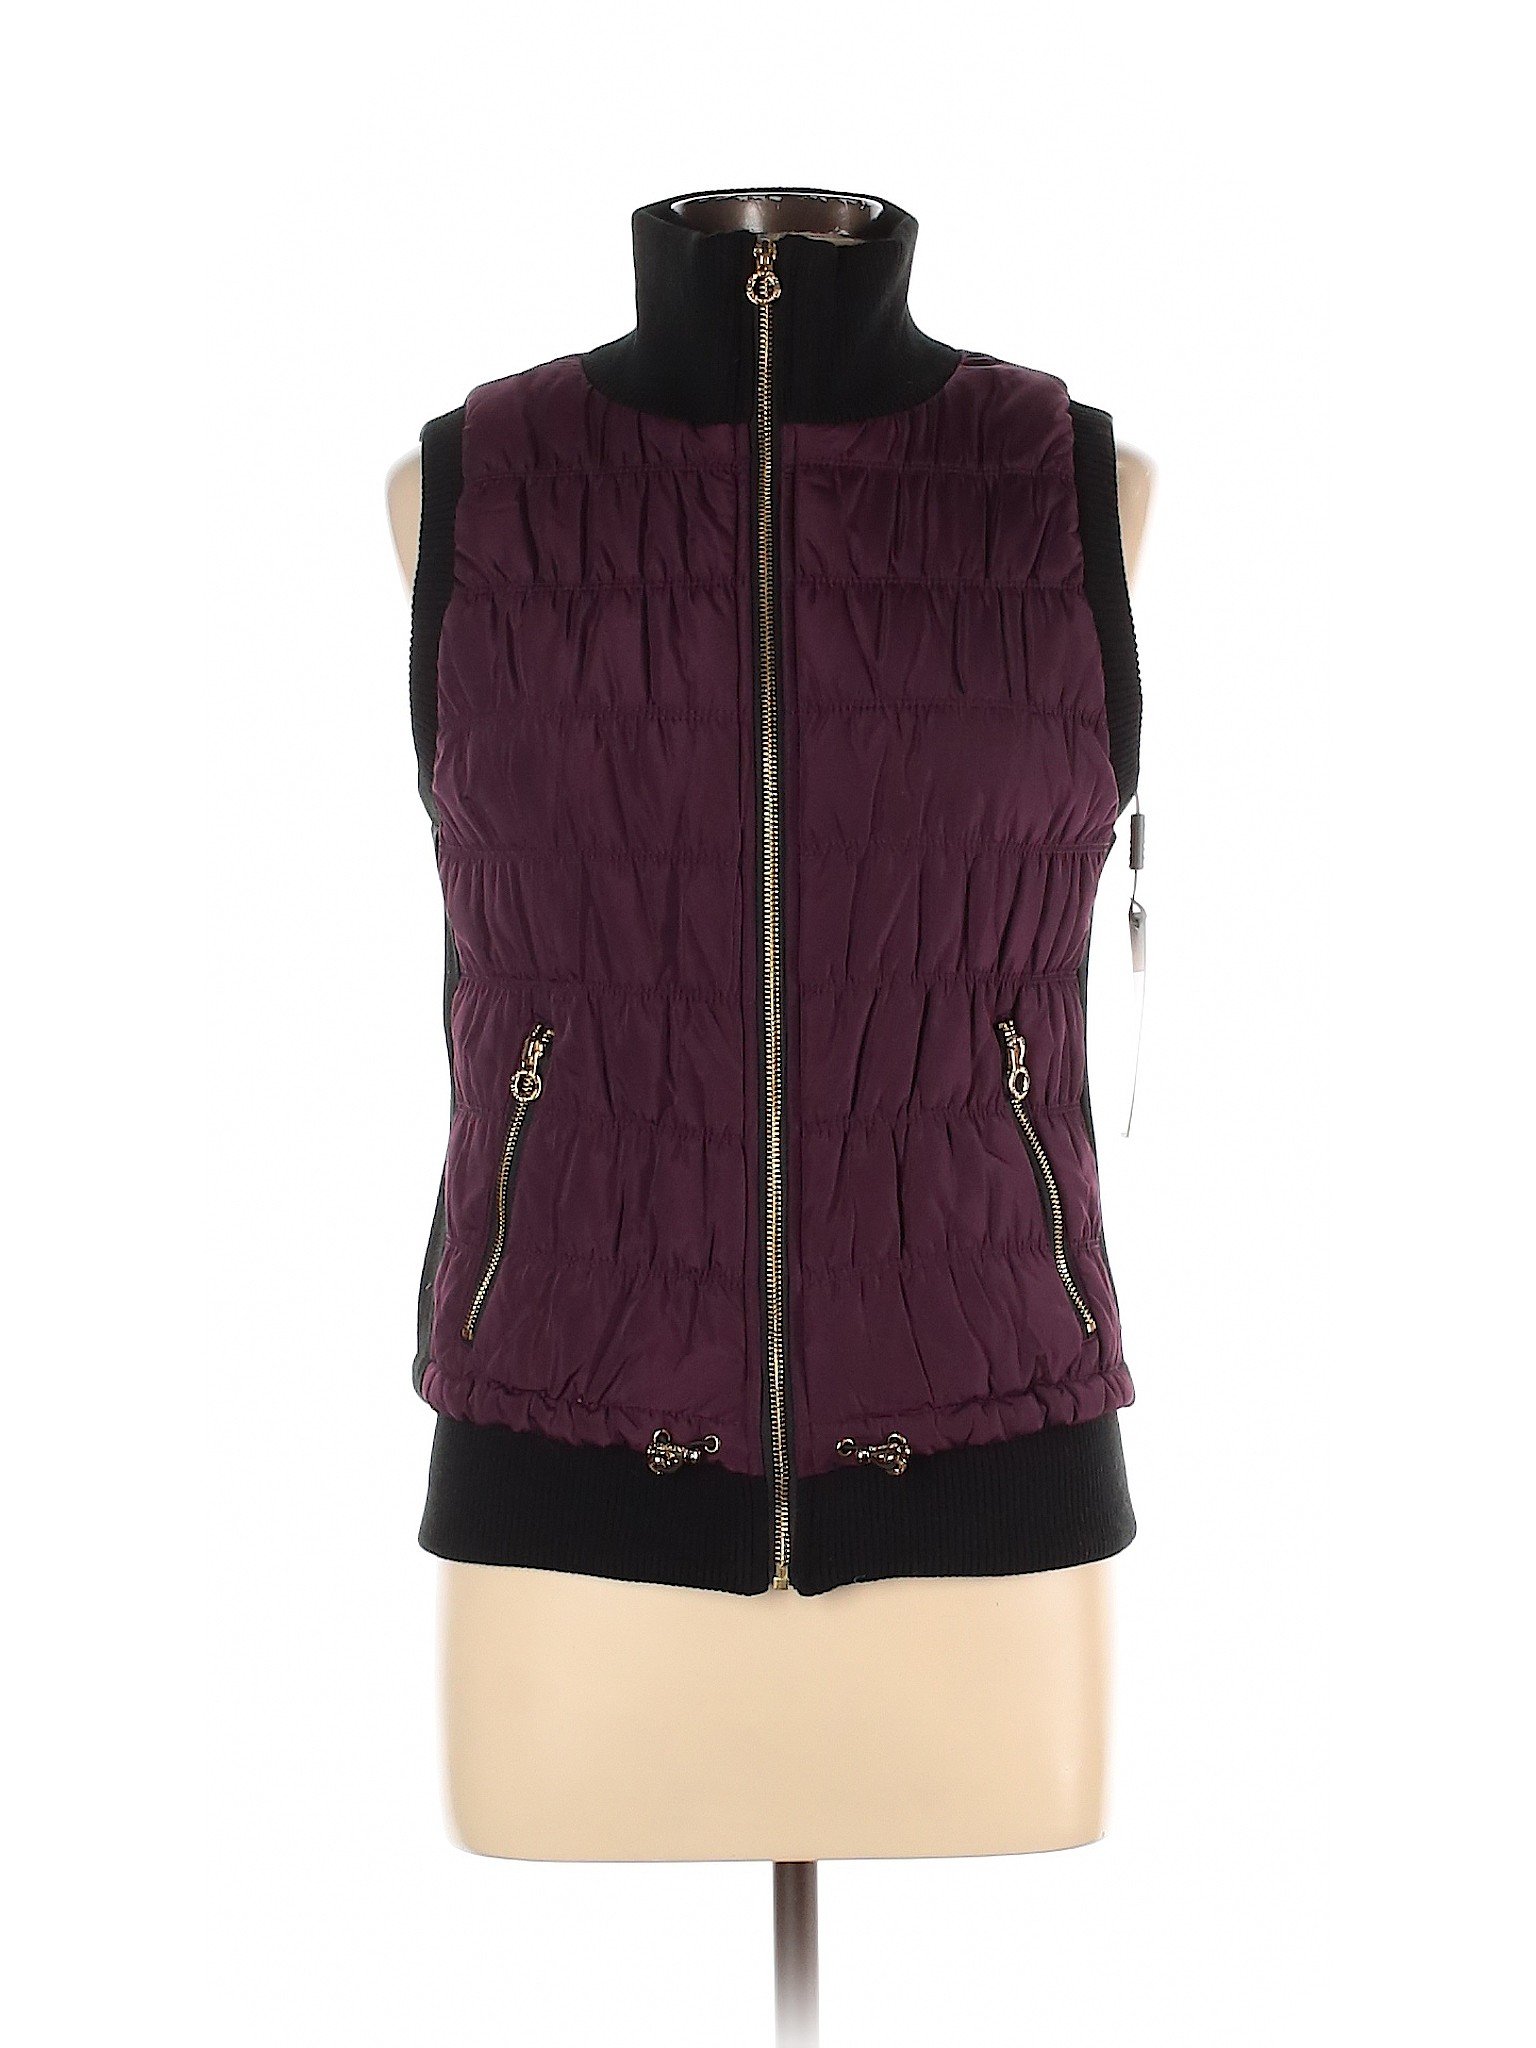 NWT Calvin Klein Performance Women Purple Vest M | eBay